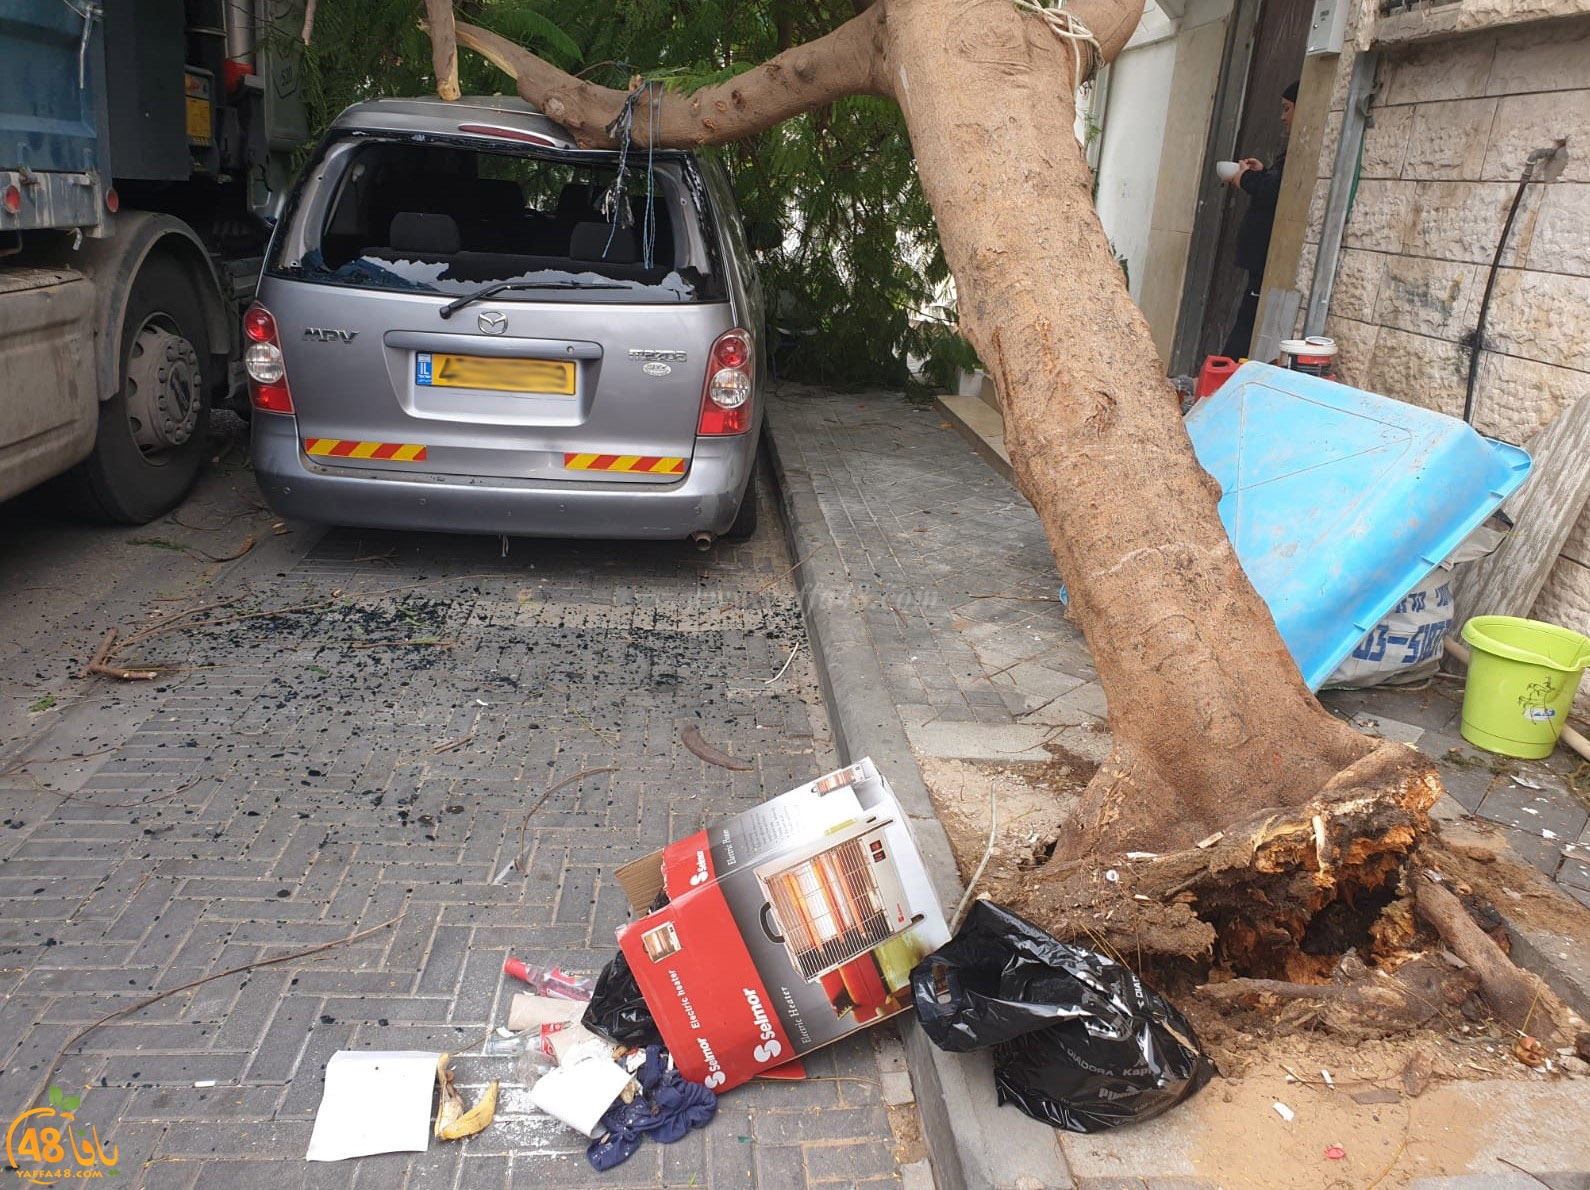  فيديو: لطف الله حال دون وقوع الكارثة اثر اصطدام شاحنة بشجرة ضخمة في يافا 